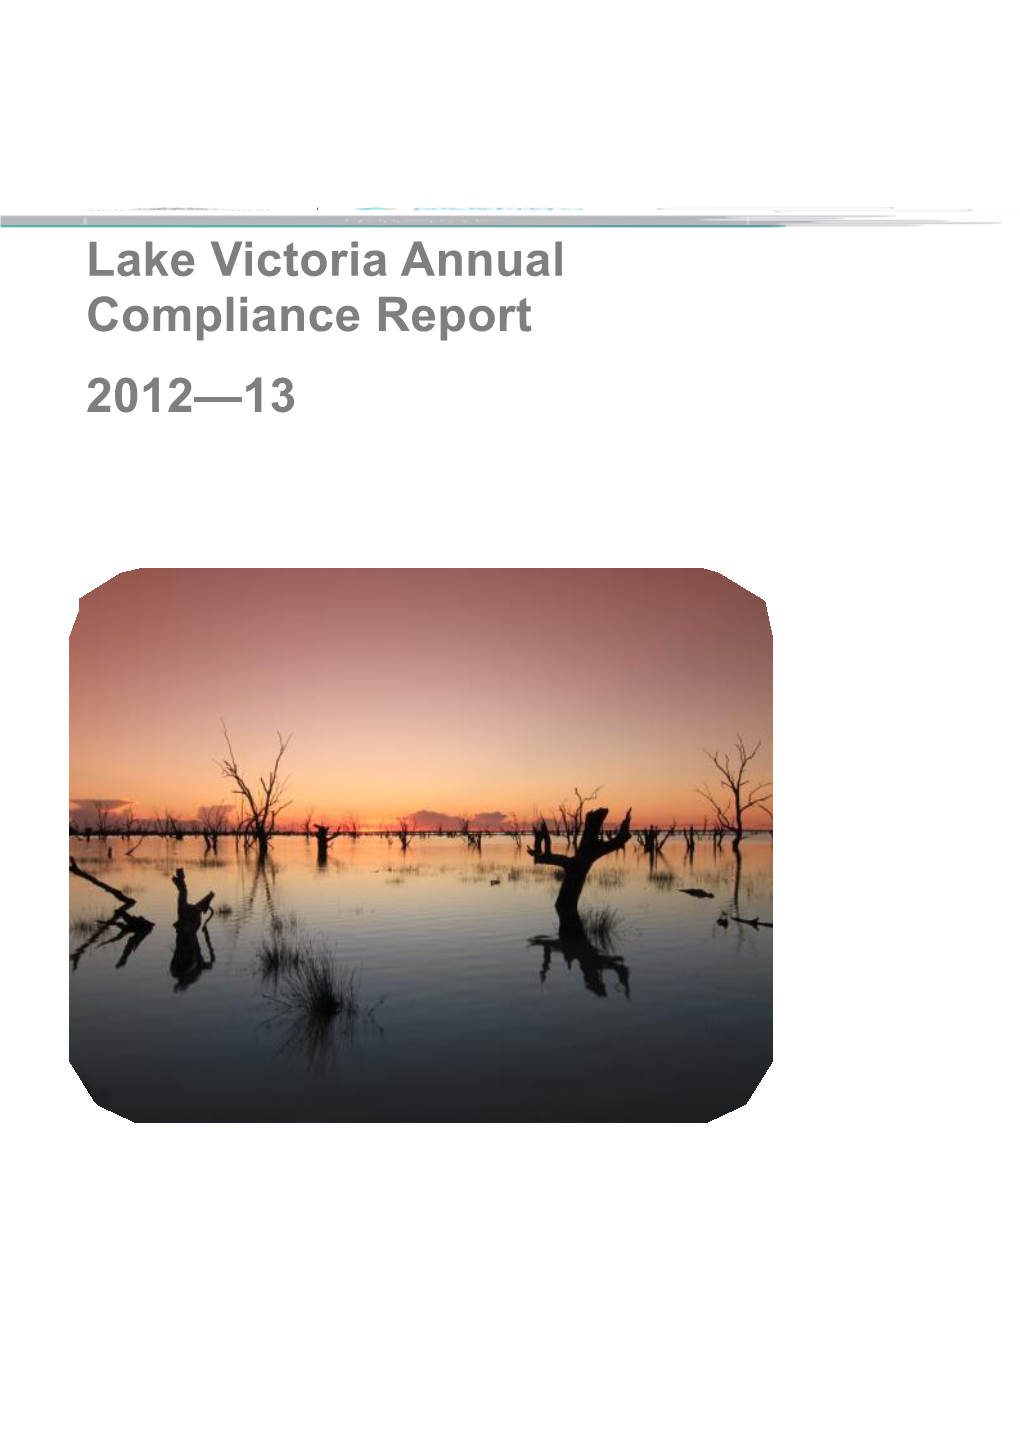 Lake Victoria Annual Compliance Report 2012-13